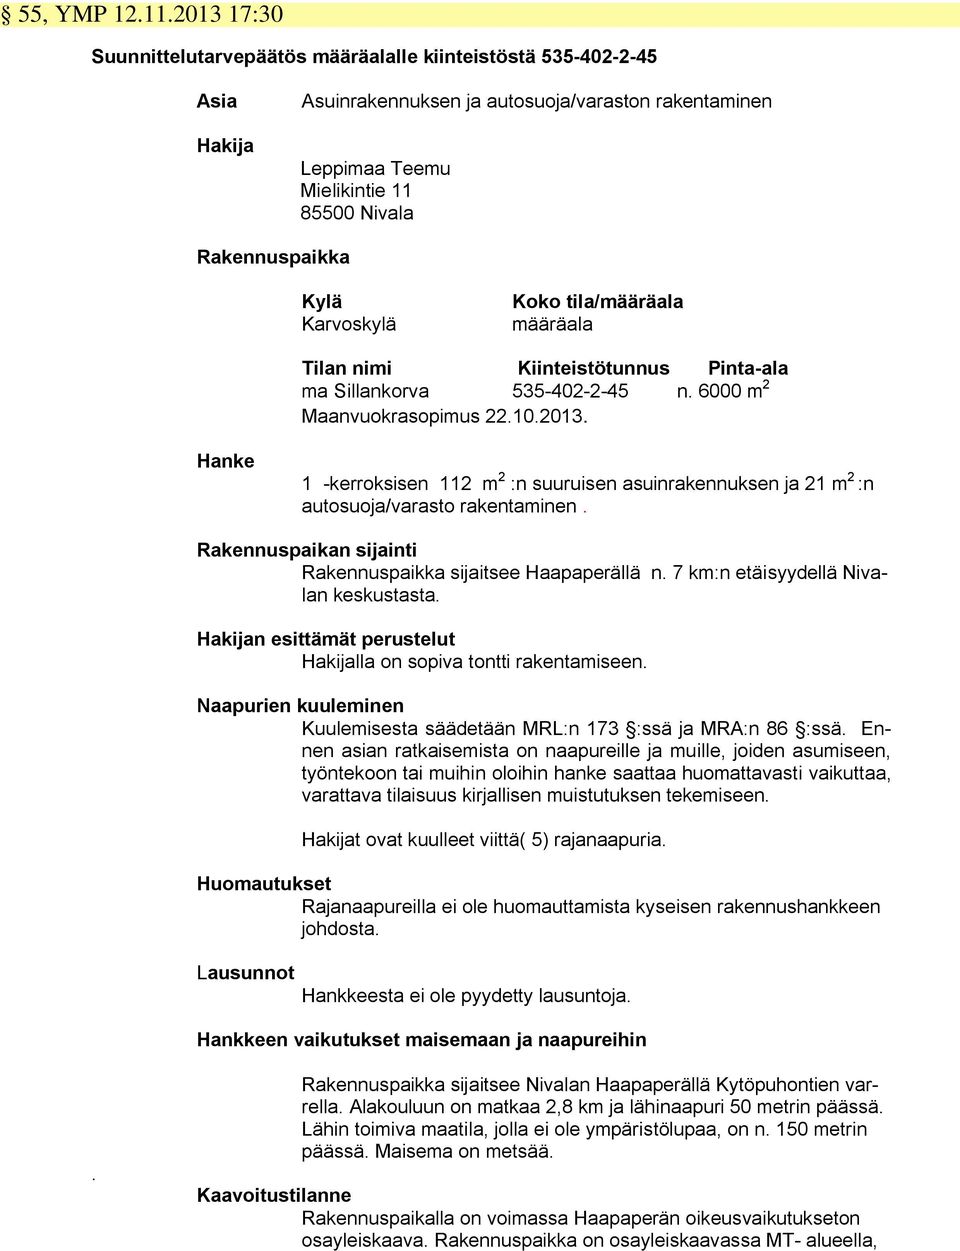 Karvoskylä Koko tila/määräala määräala Tilan nimi Kiinteistötunnus Pinta-ala ma Sillankorva 535-402-2-45 n. 6000 m 2 Maanvuokrasopimus 22.10.2013.